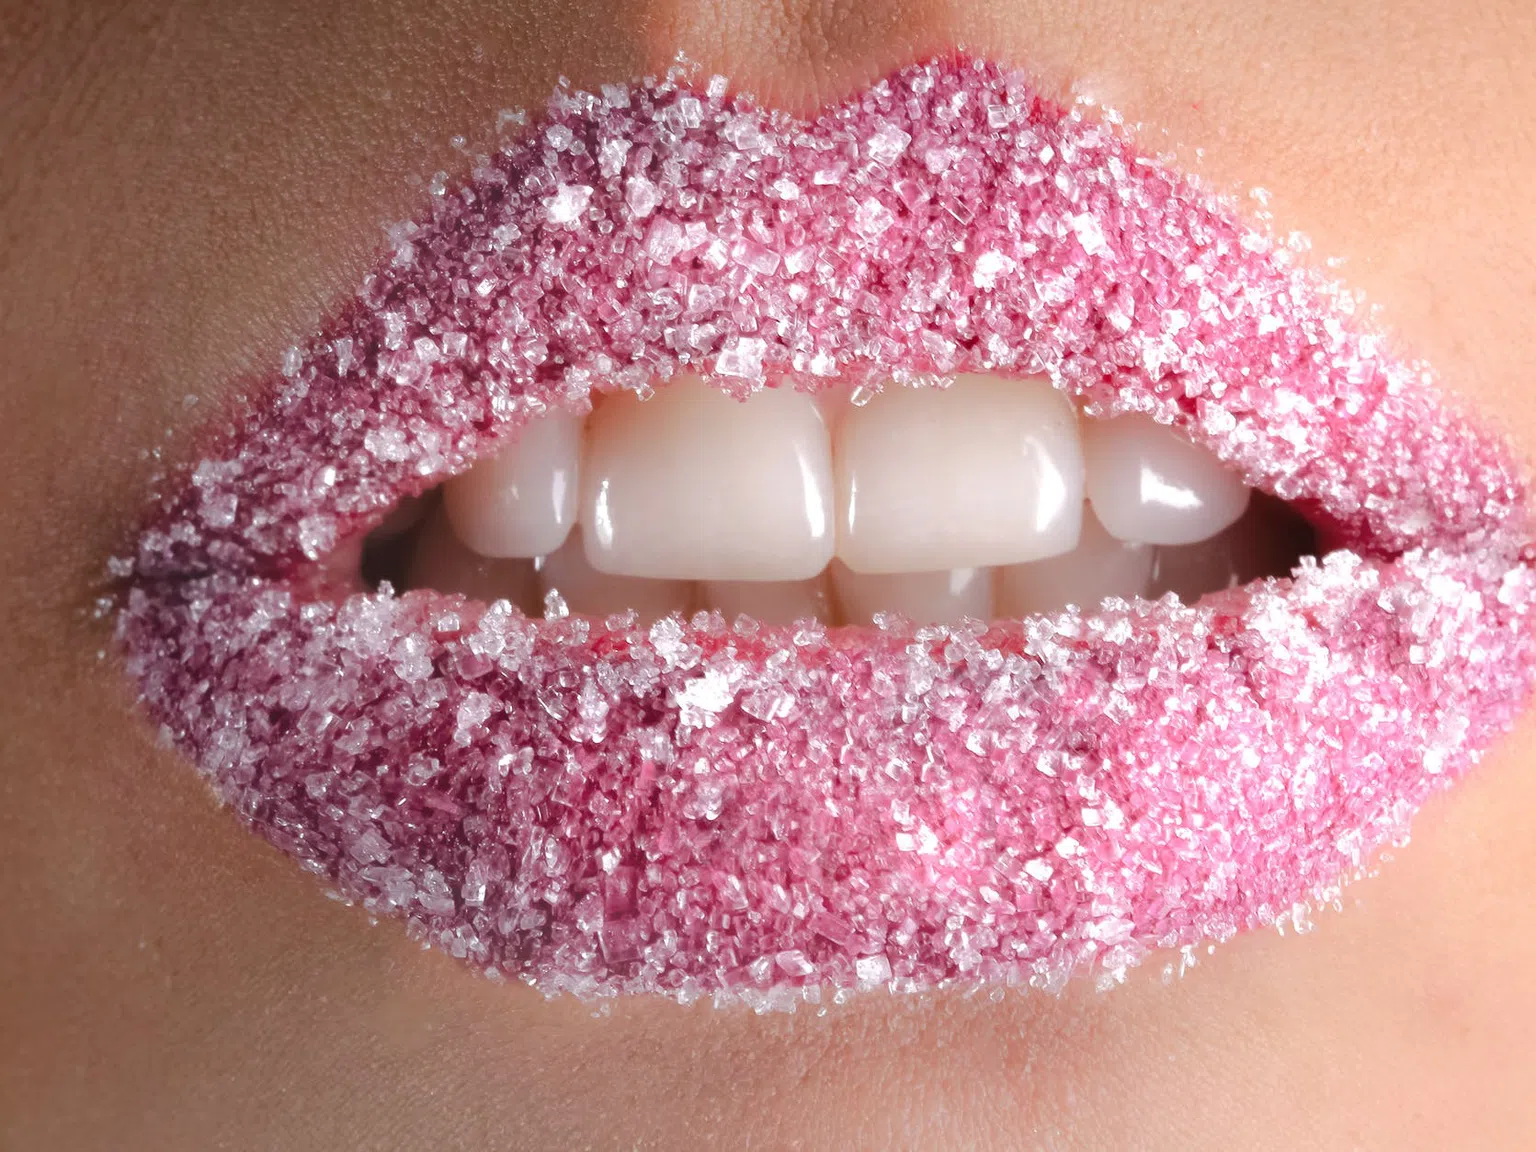 14 продукта, които увреждат зъбите повече от захарта